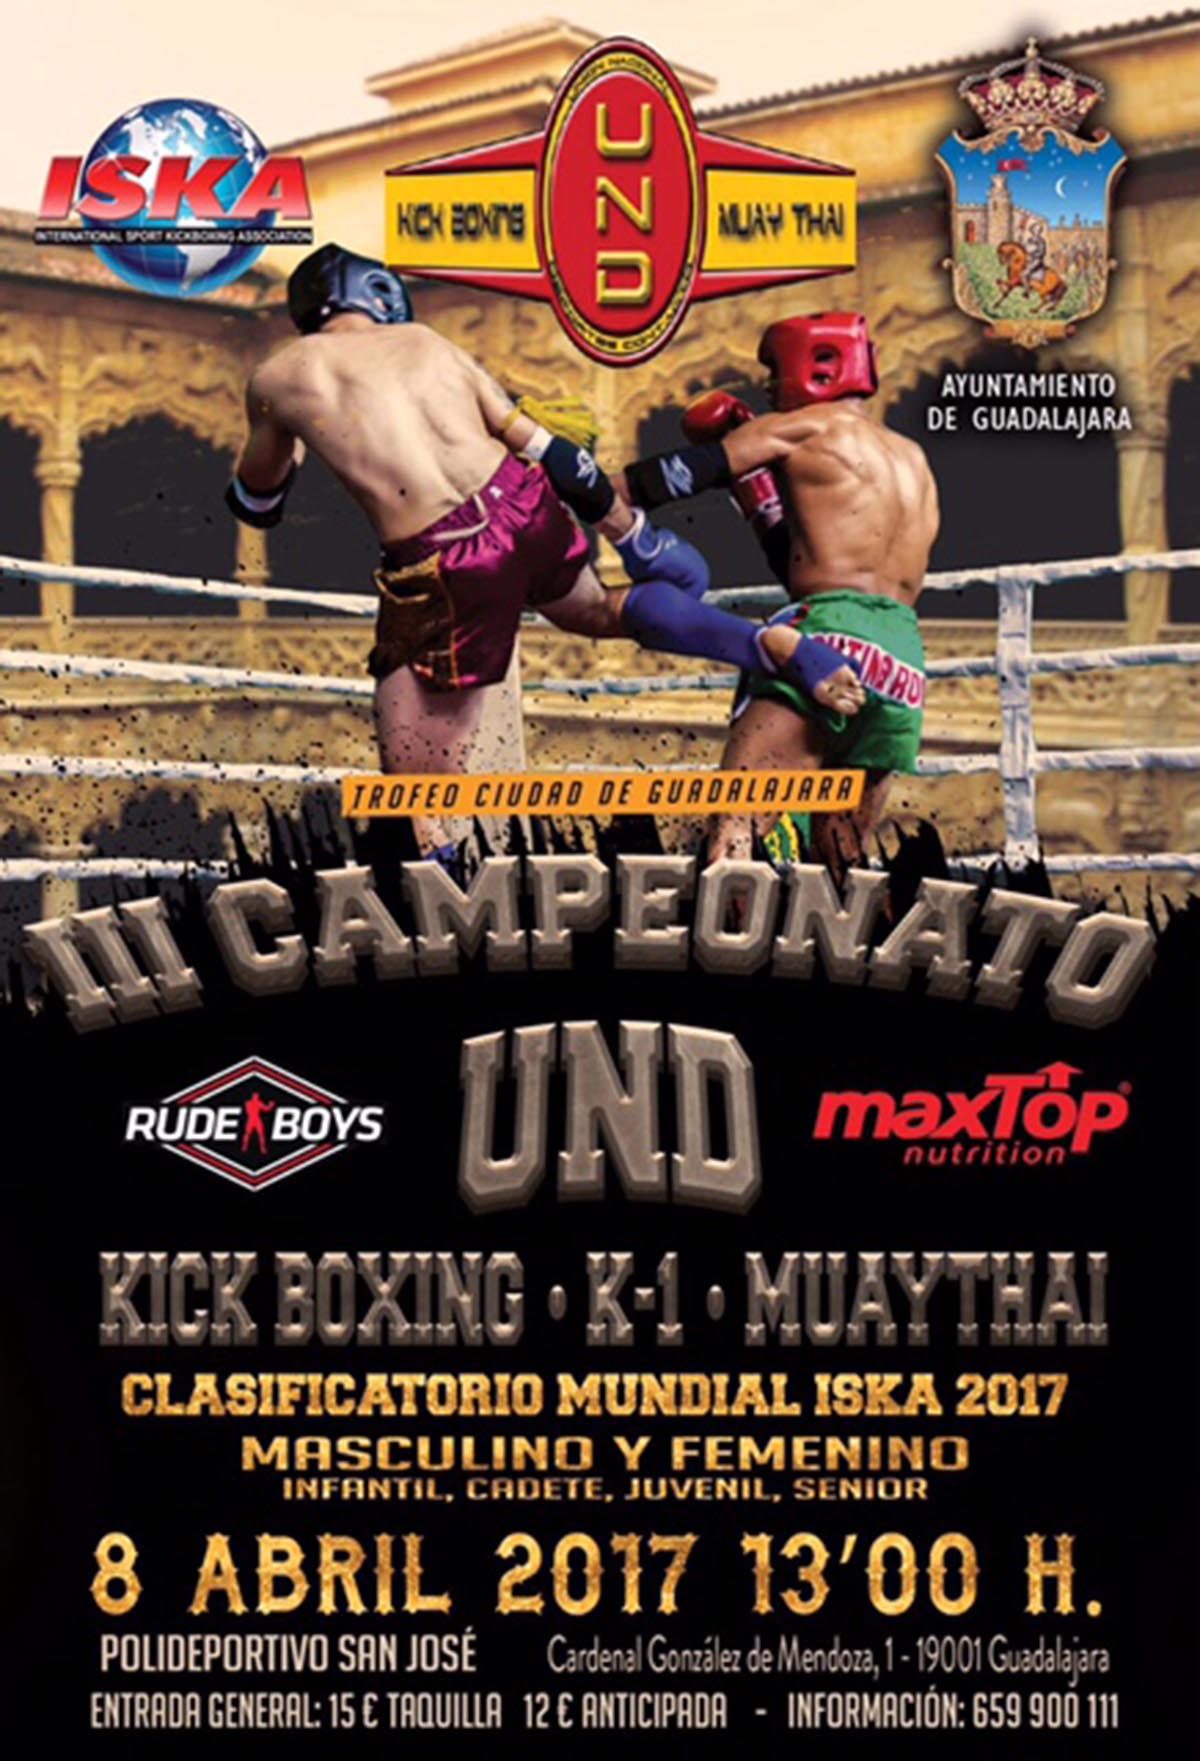 Guadalajara acoge un campeonato de kick boxing valedero para el Mundial